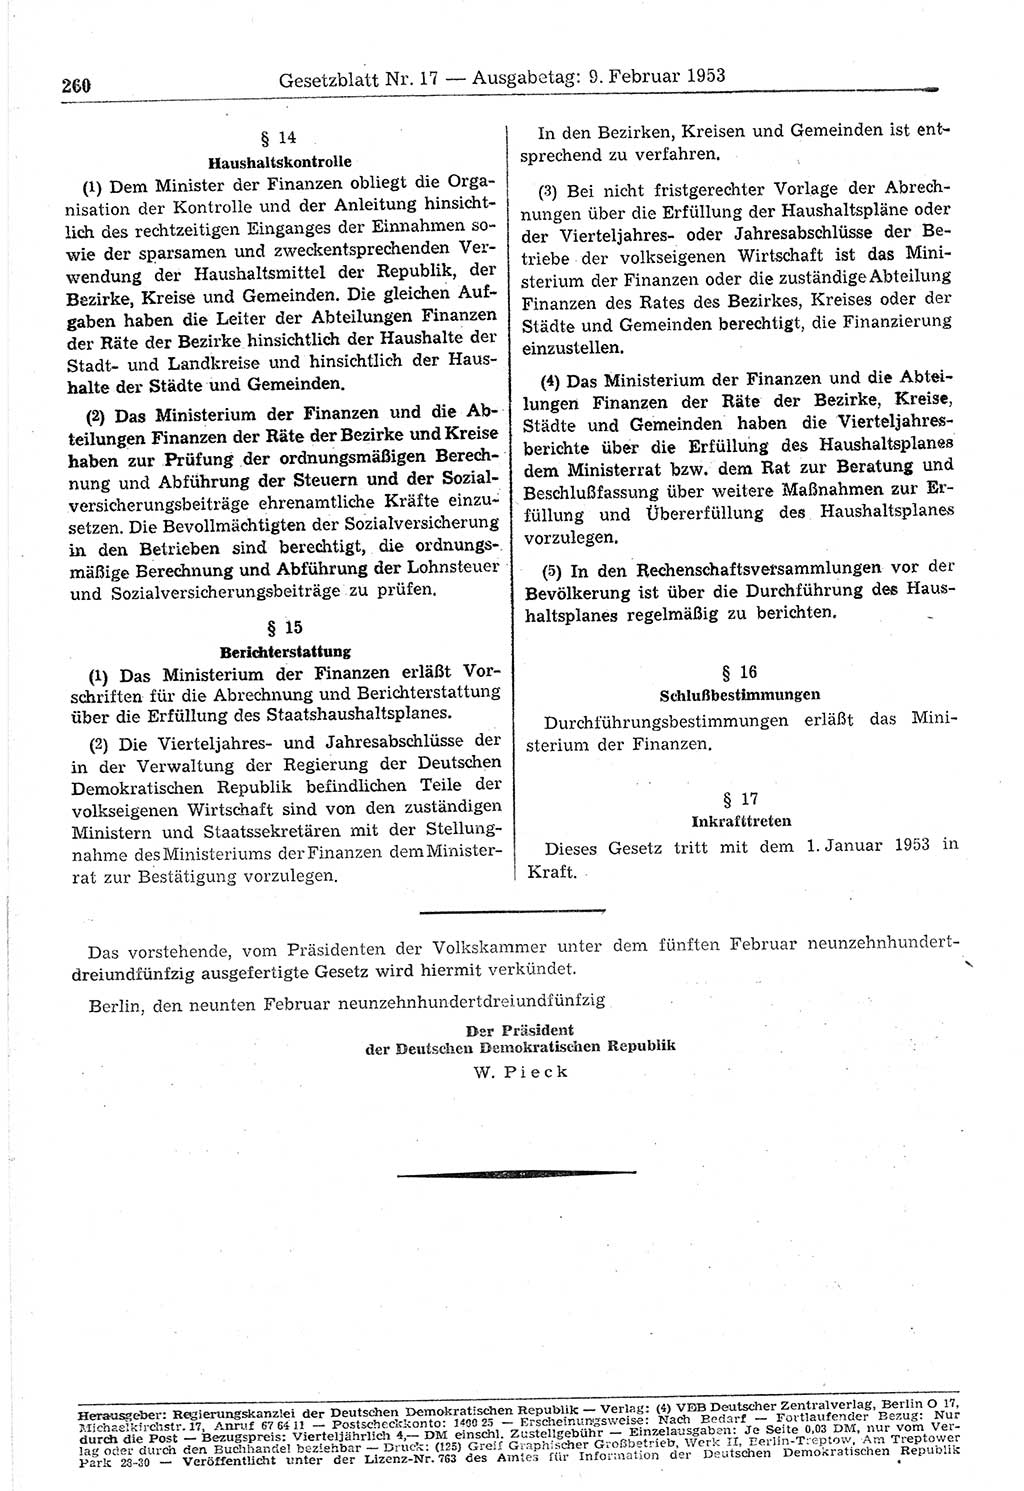 Gesetzblatt (GBl.) der Deutschen Demokratischen Republik (DDR) 1953, Seite 260 (GBl. DDR 1953, S. 260)